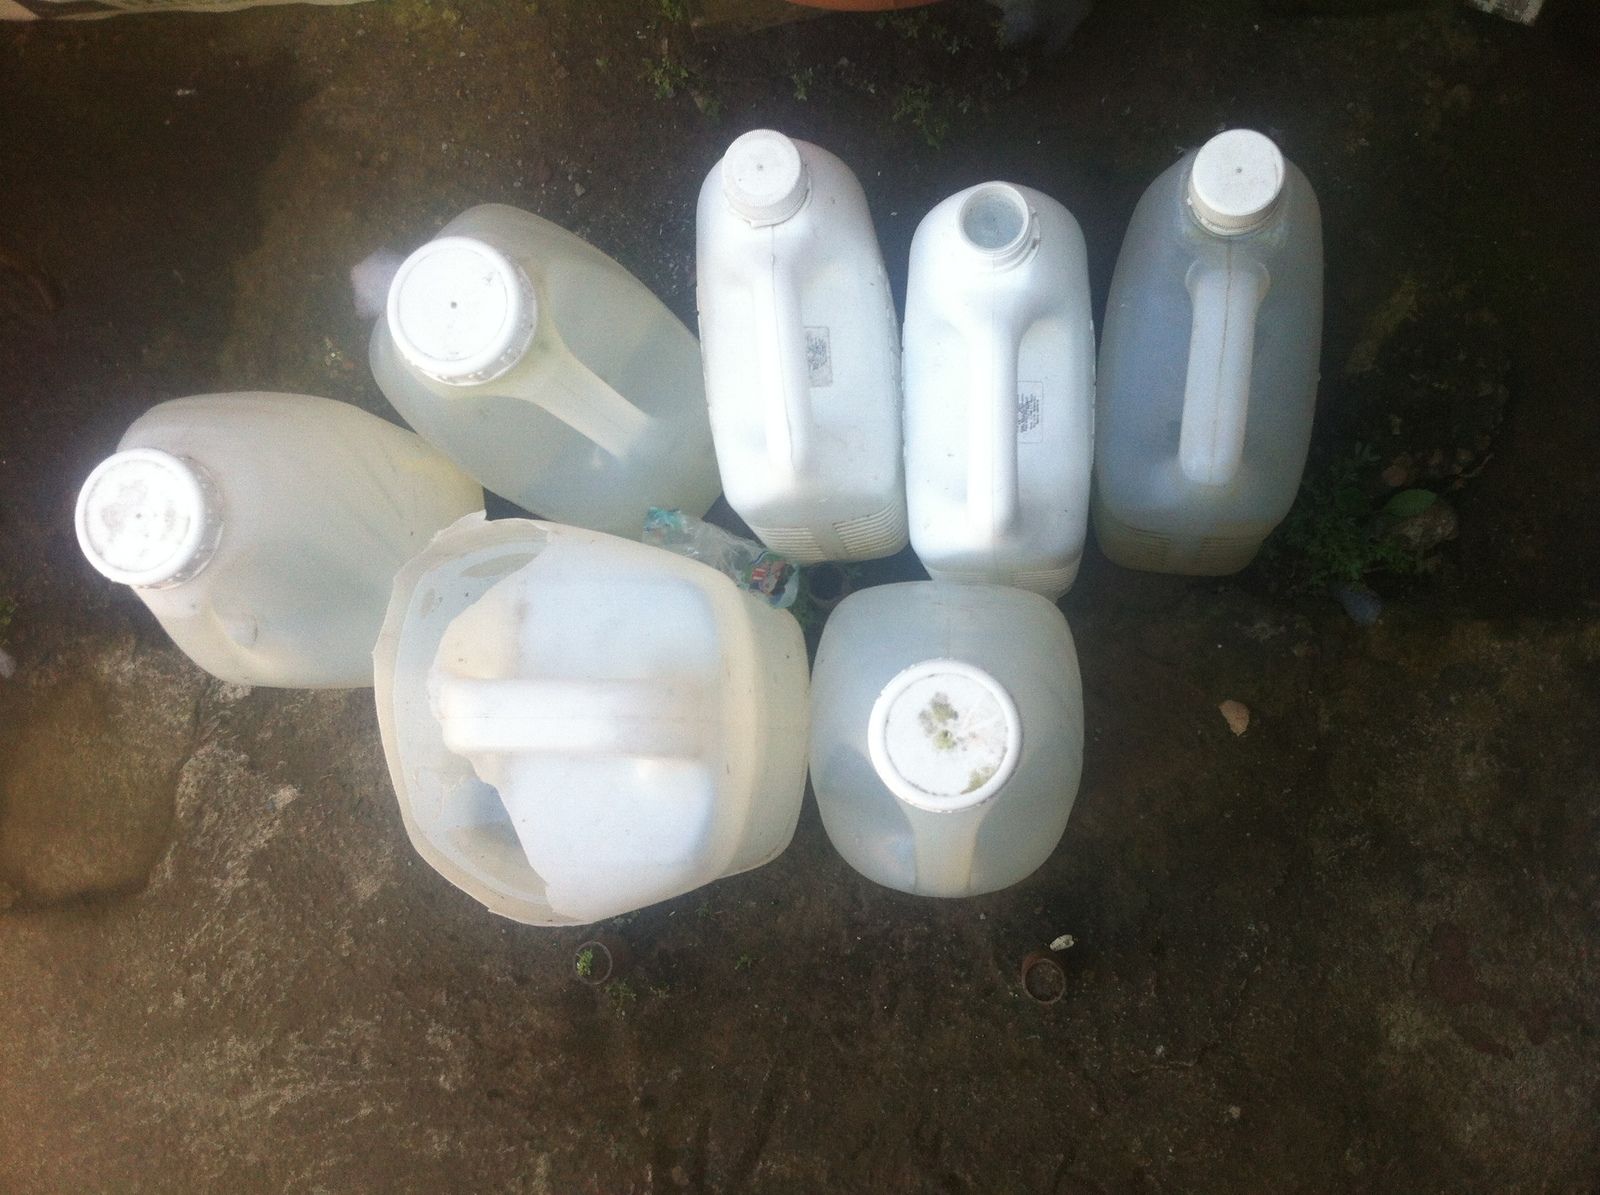 Las familias guardan agua en botellas, panas y otros recipientes 